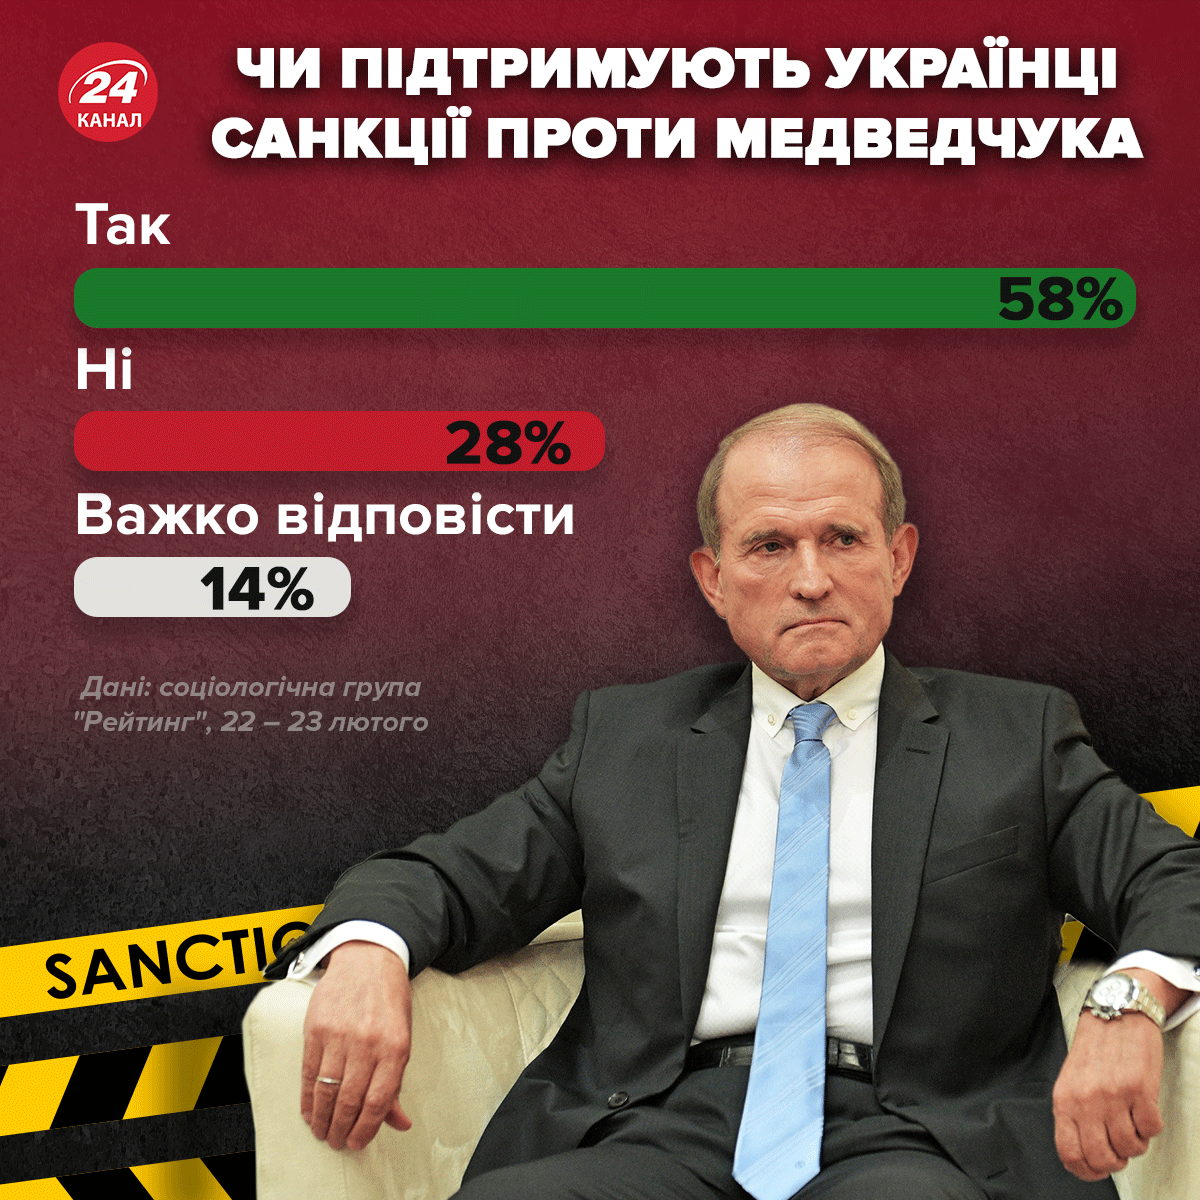 Поддерживают ли украинцы санкции против Медвечука / Инфографика 24 канала